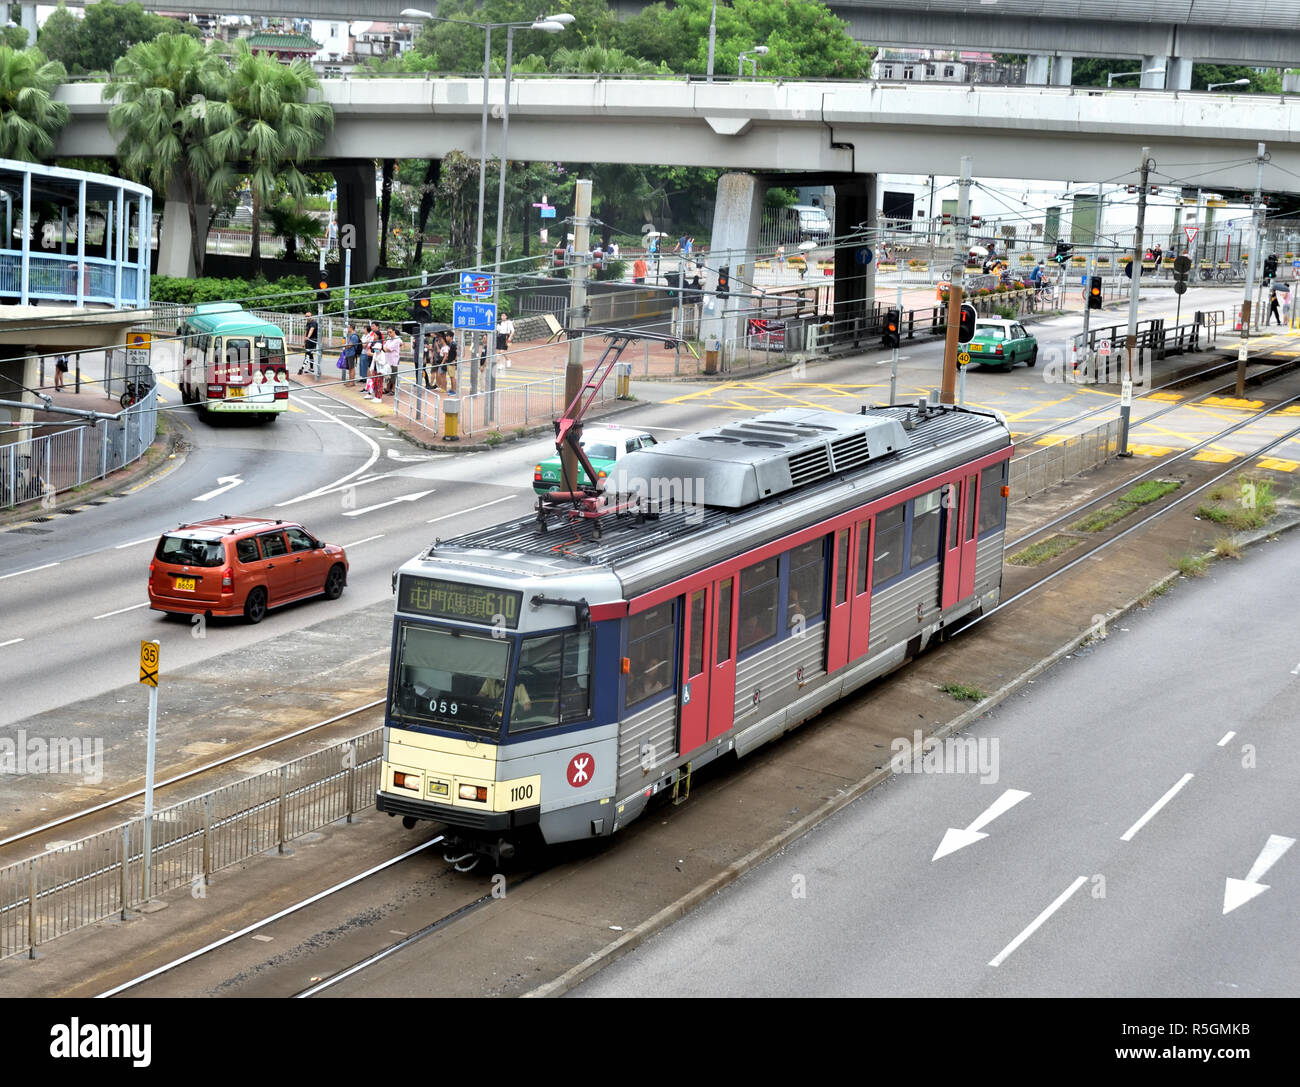 Straßenbahn der Light Rail Transit System, Swift Services zwischen Bereichen mit Yuen Long und Tuen Mun Bezirke bietet. Stockfoto